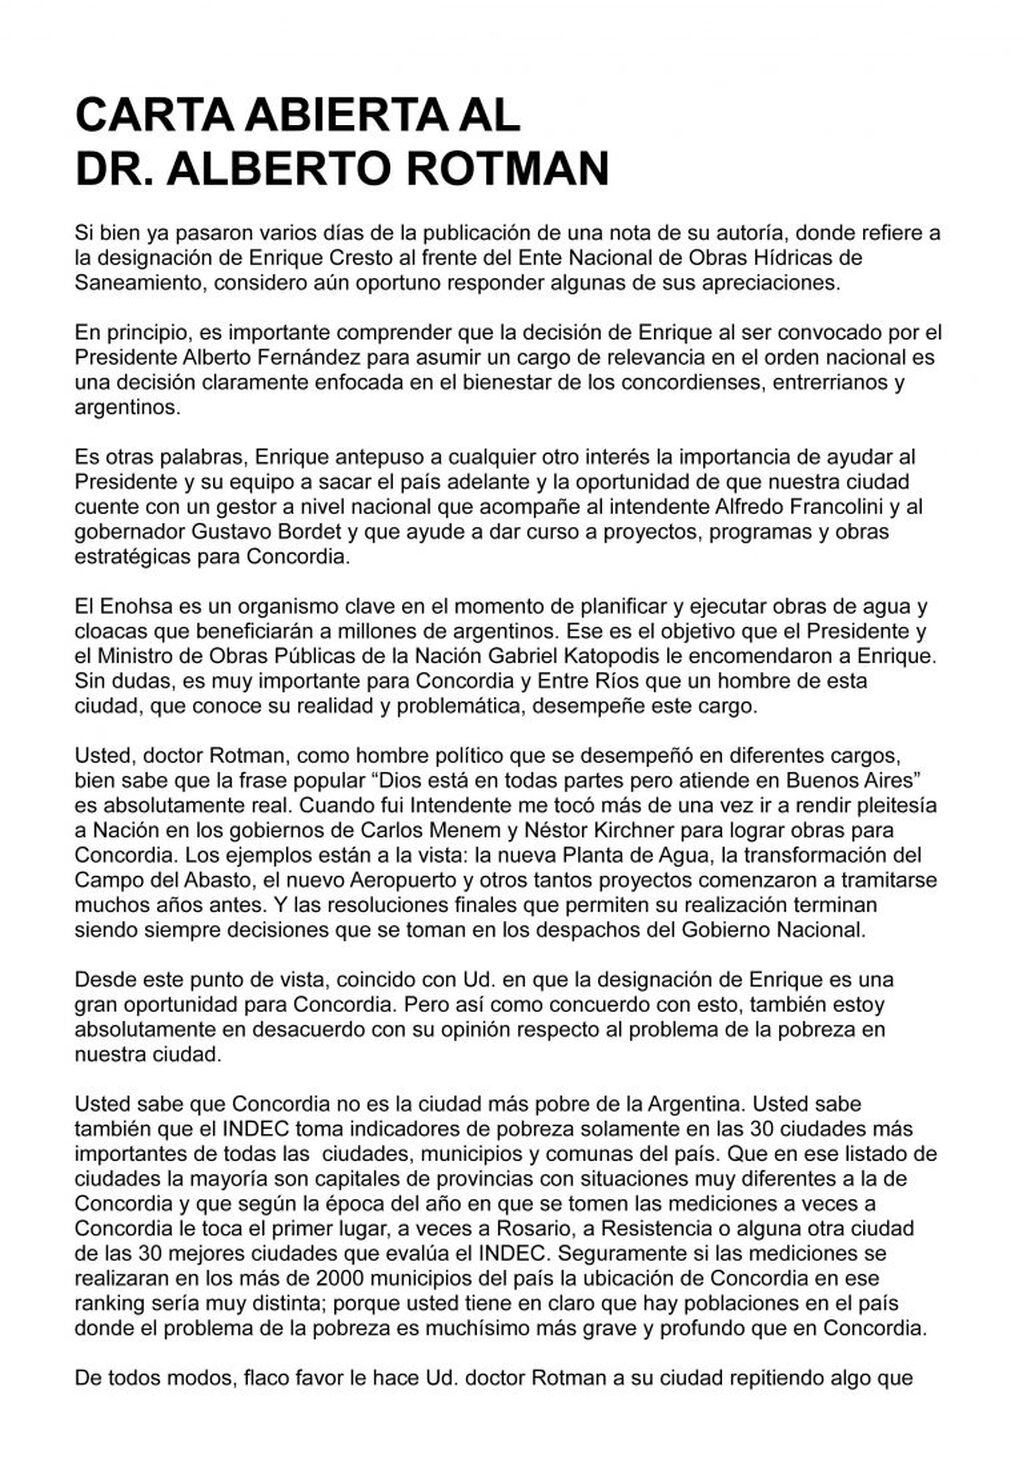 Carta Abierta de Enrique Cresto a Alberto Rotman.